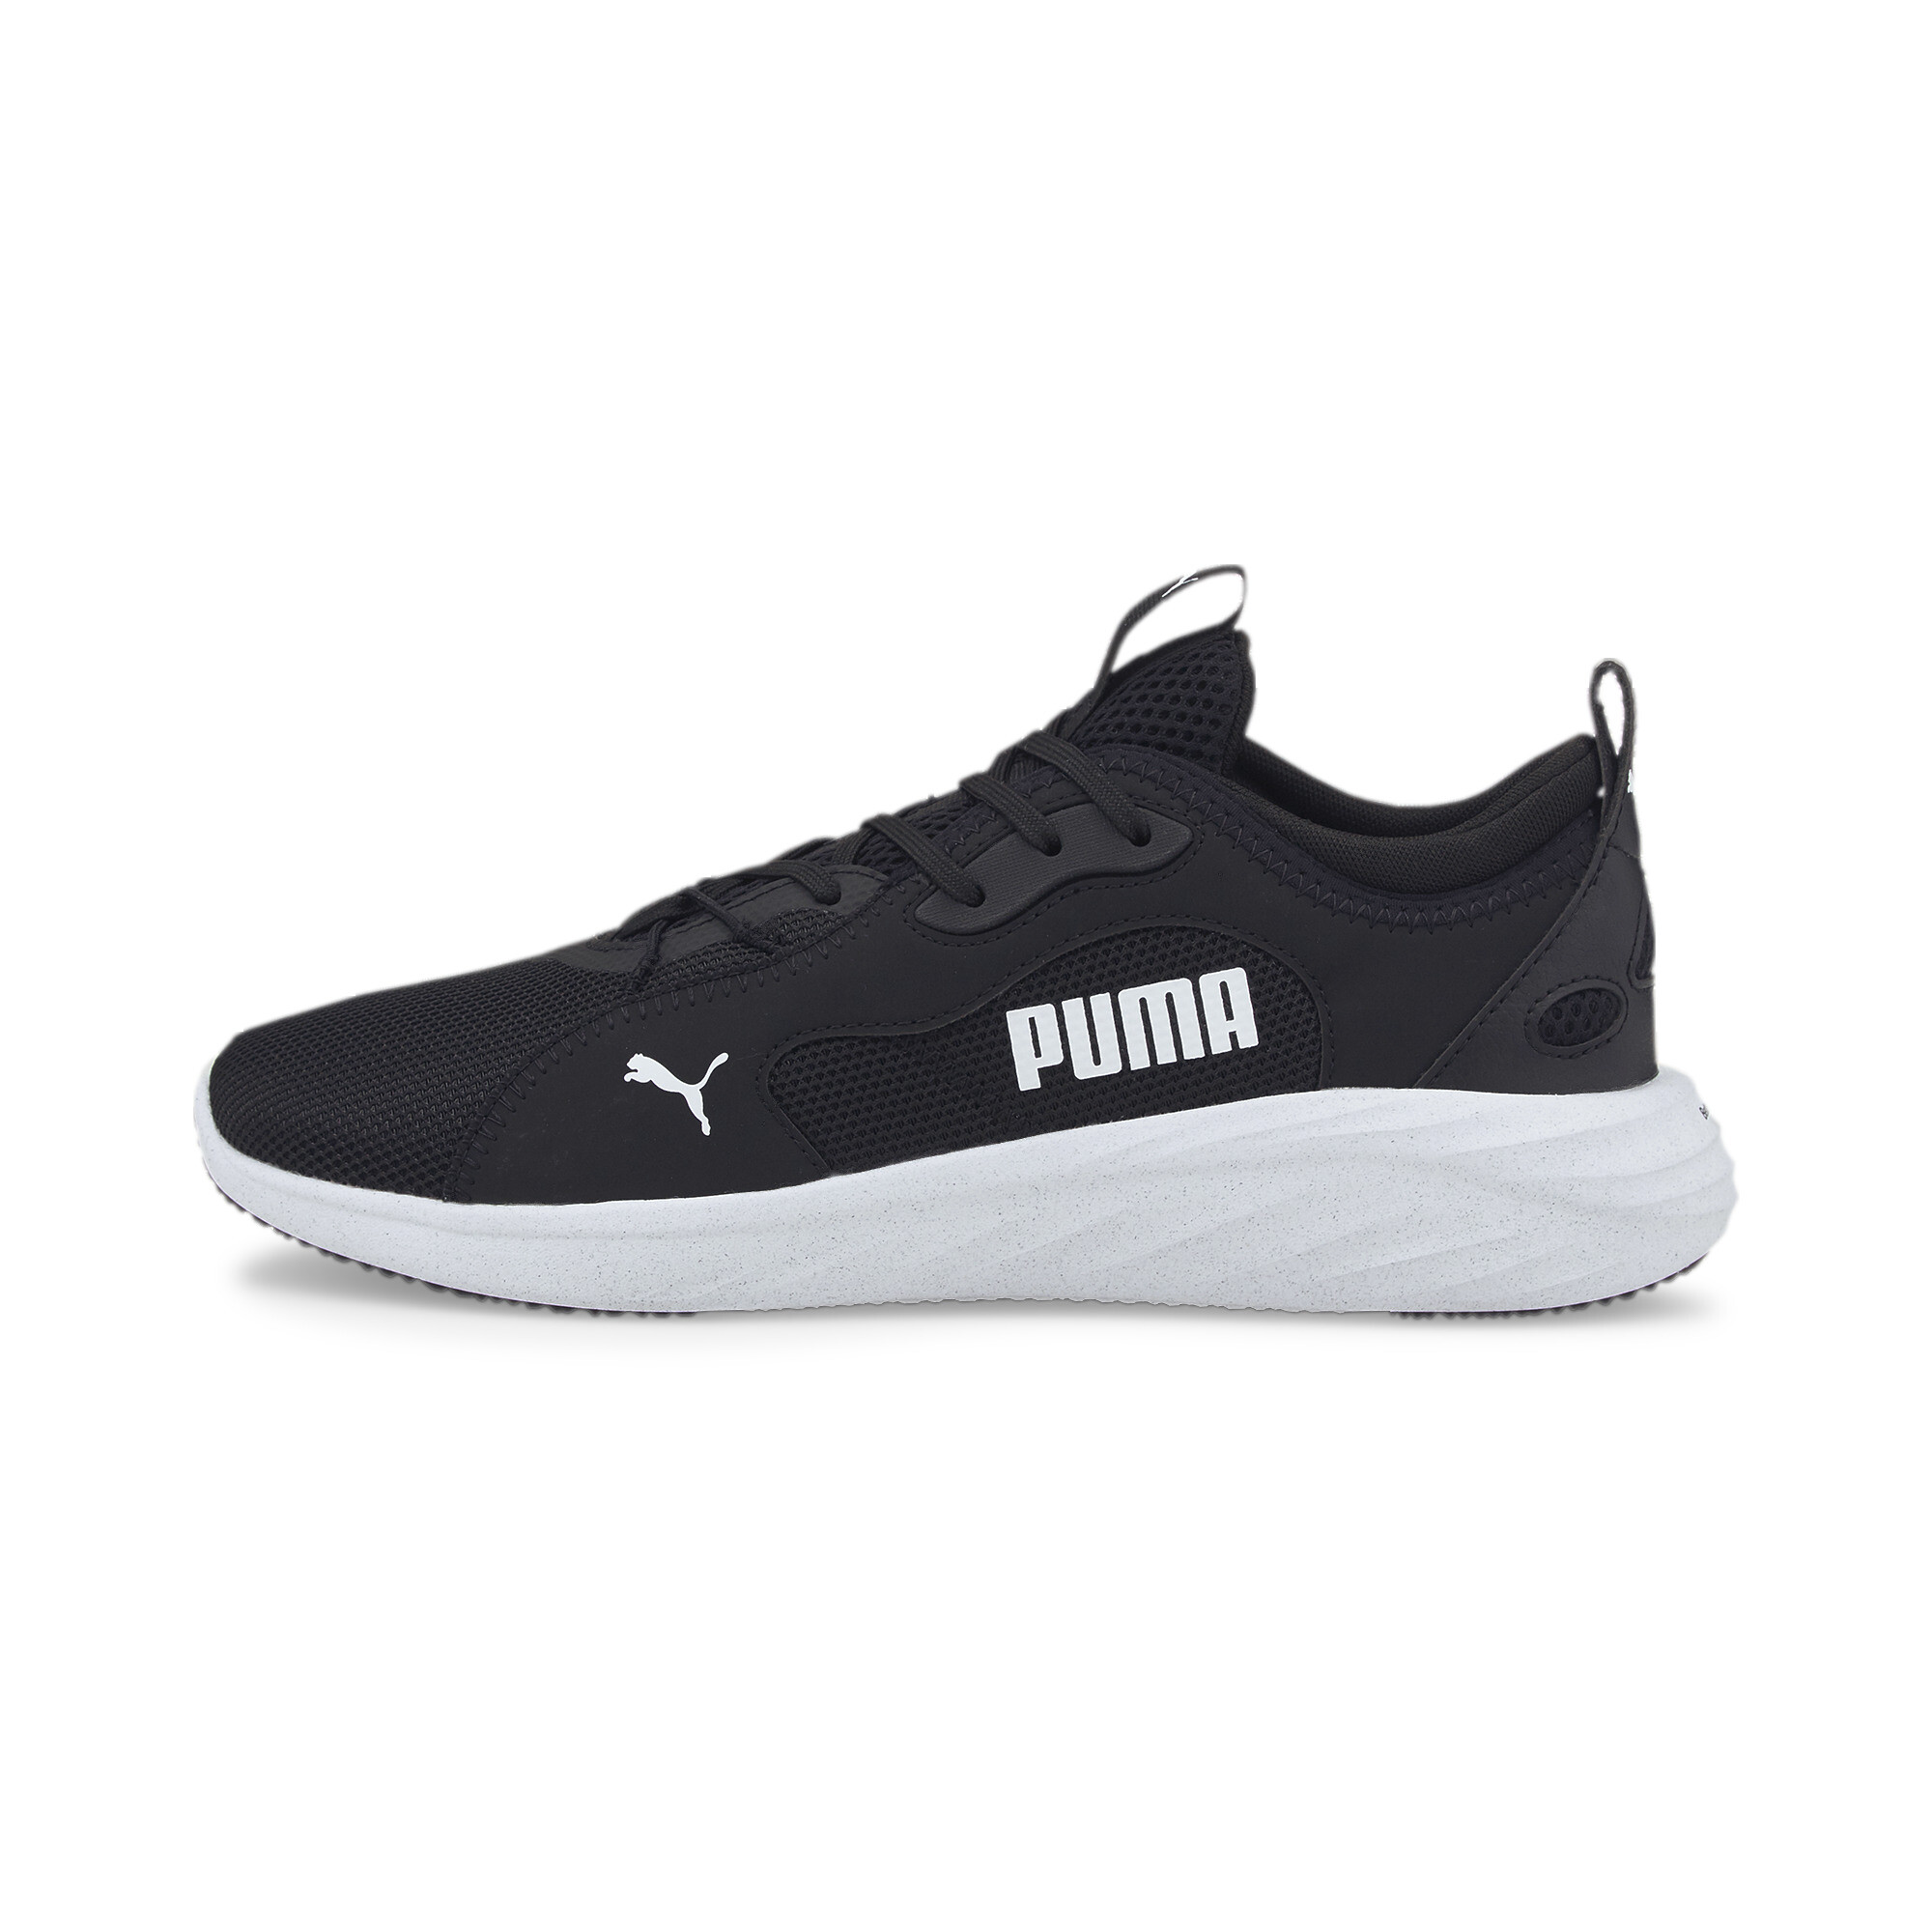 PUMA Men's Better Foam Emerge Street Running Shoes